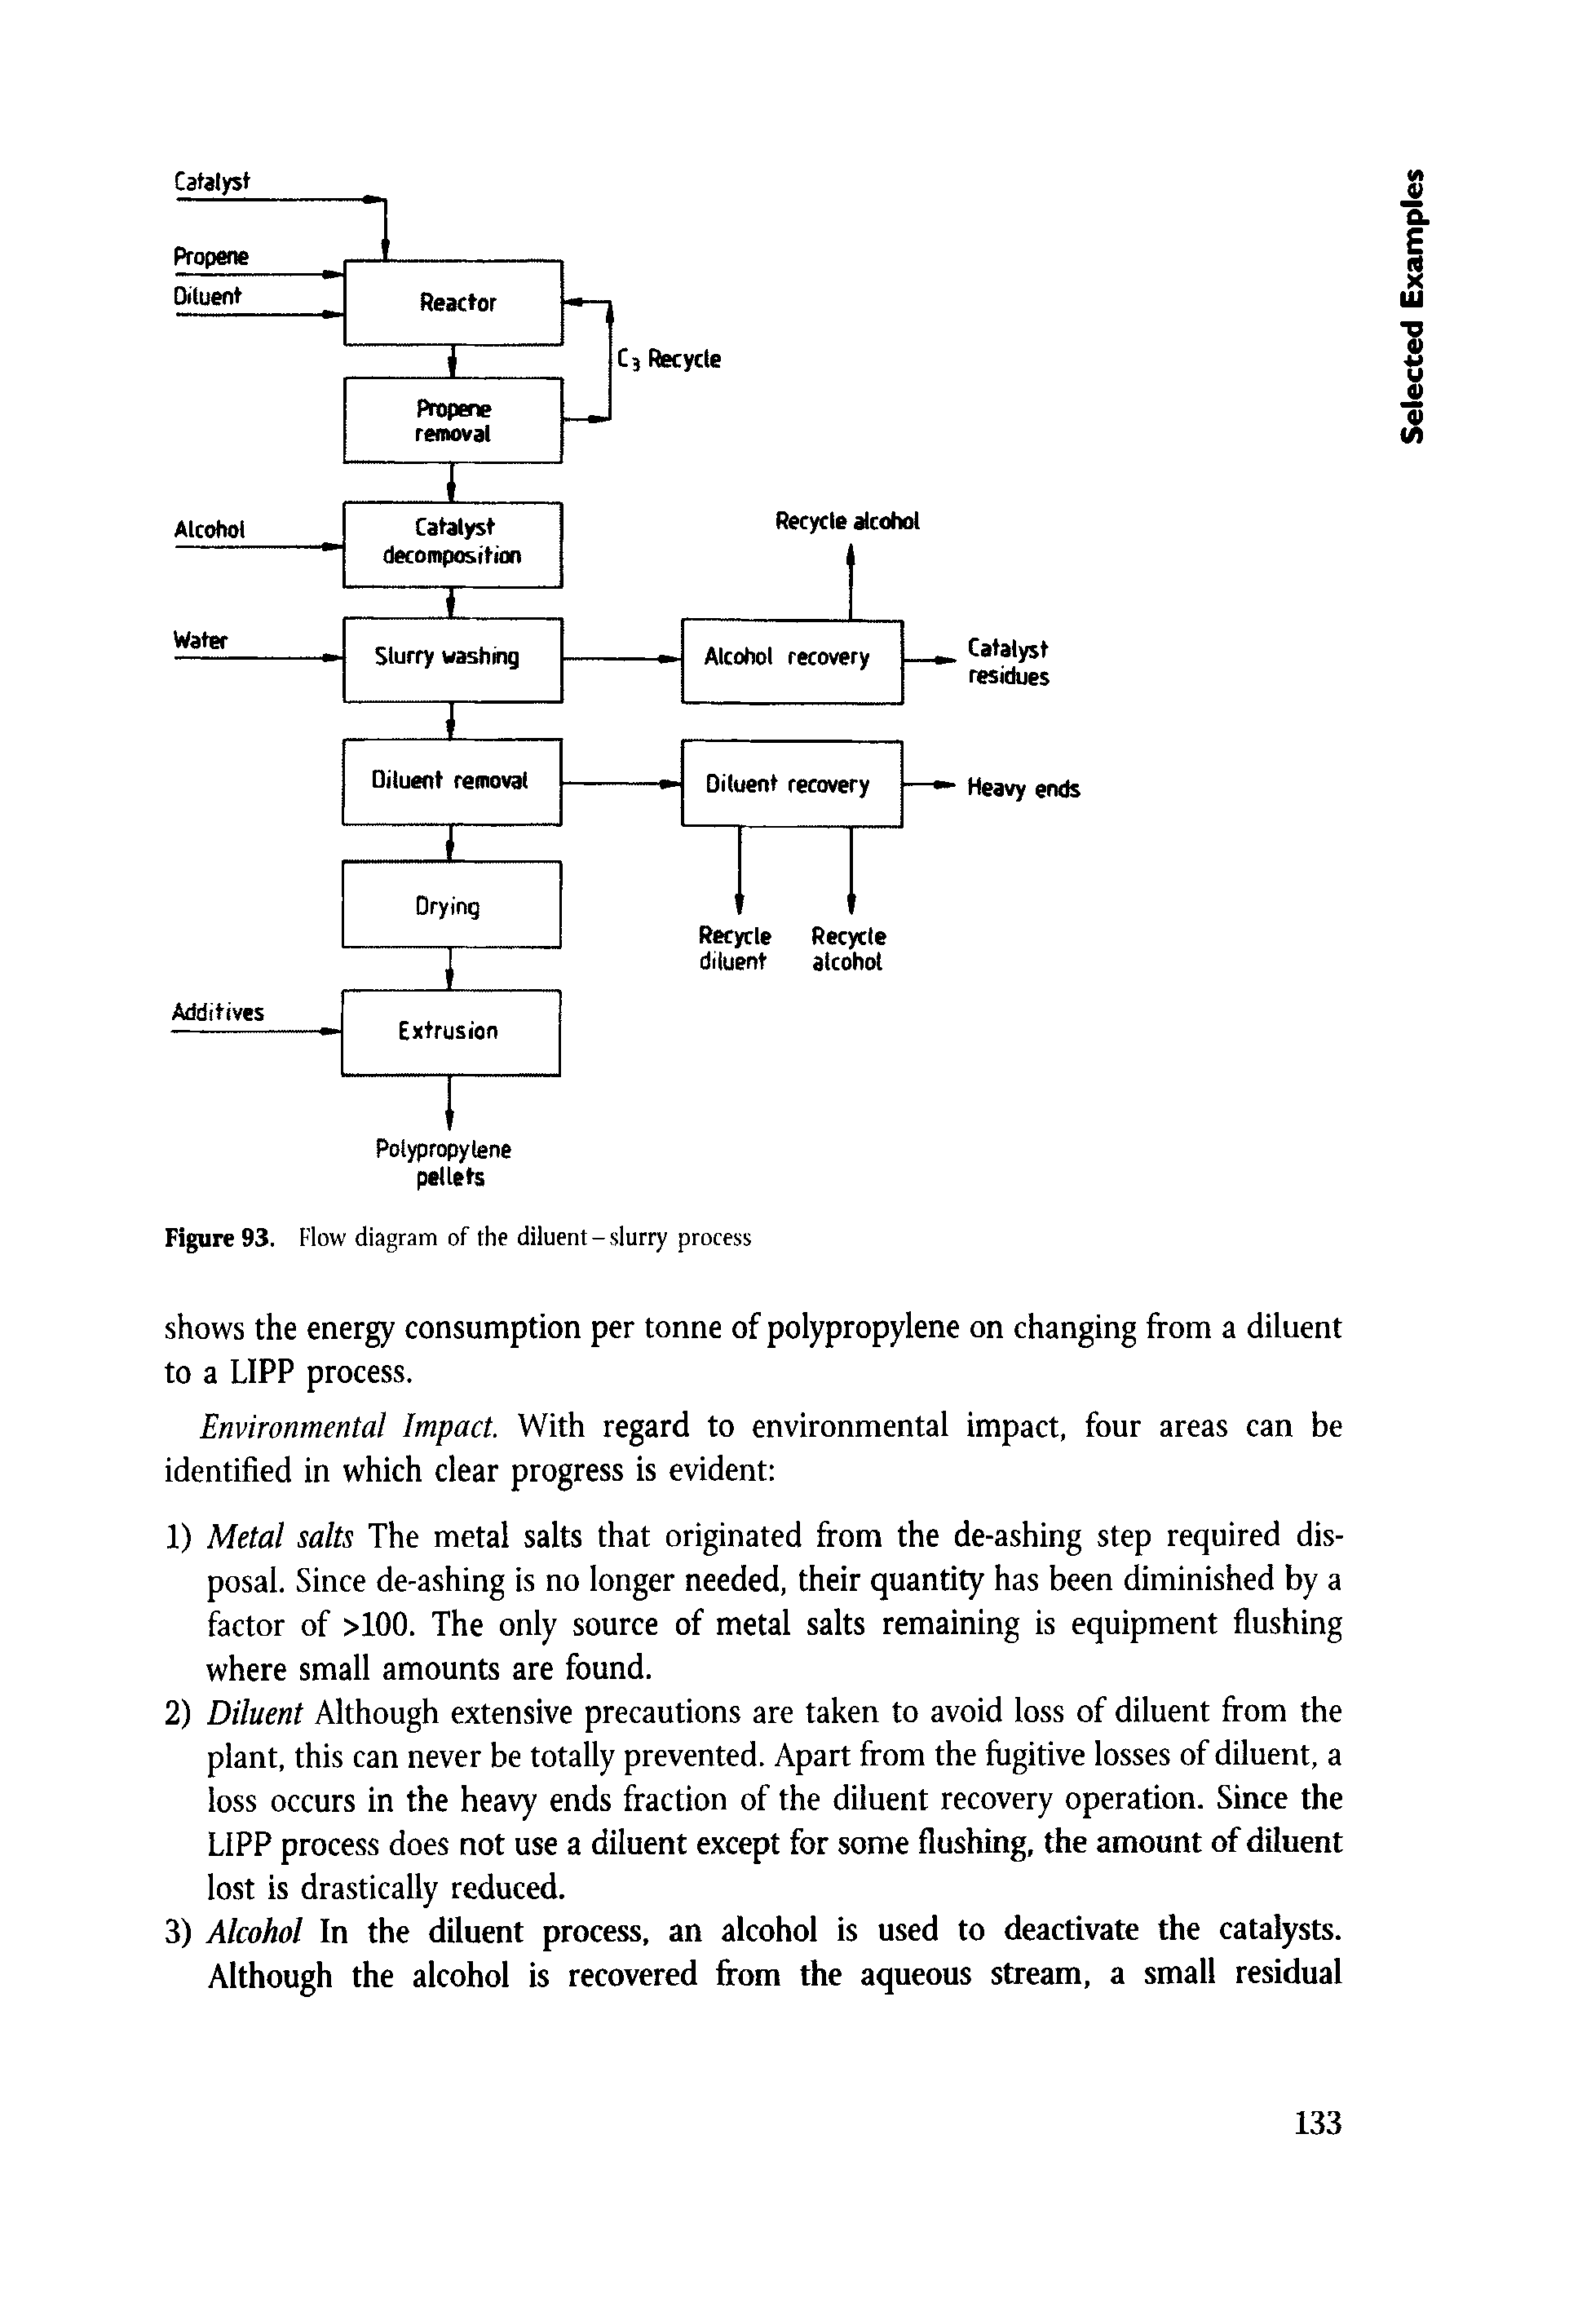 Figure 93. Flow diagram of the diluent-slurry process...